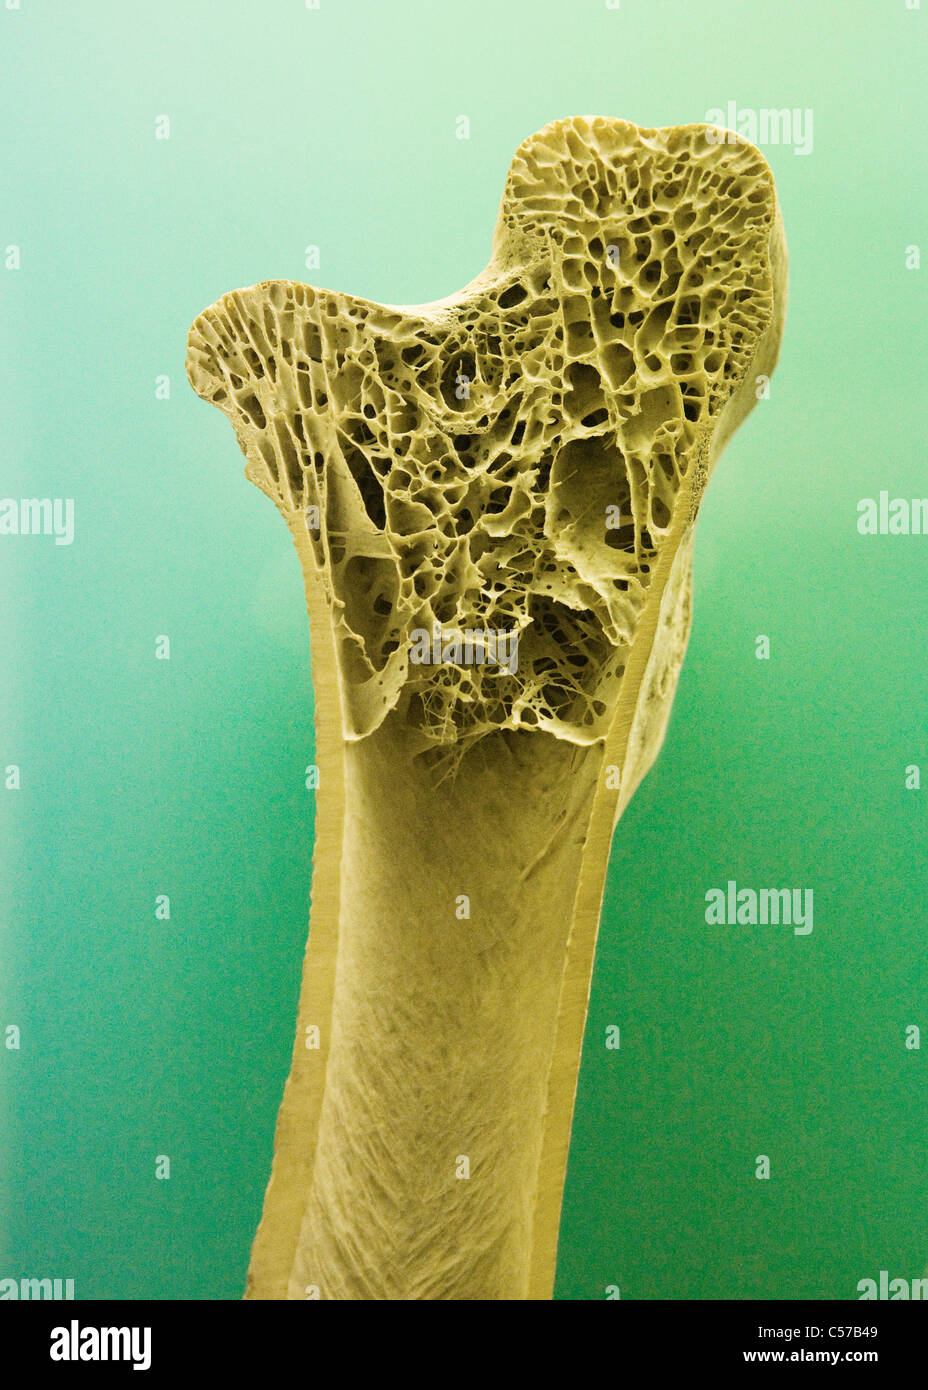 La section transversale des droits de l'os long montrant trabecula tissu osseux Banque D'Images